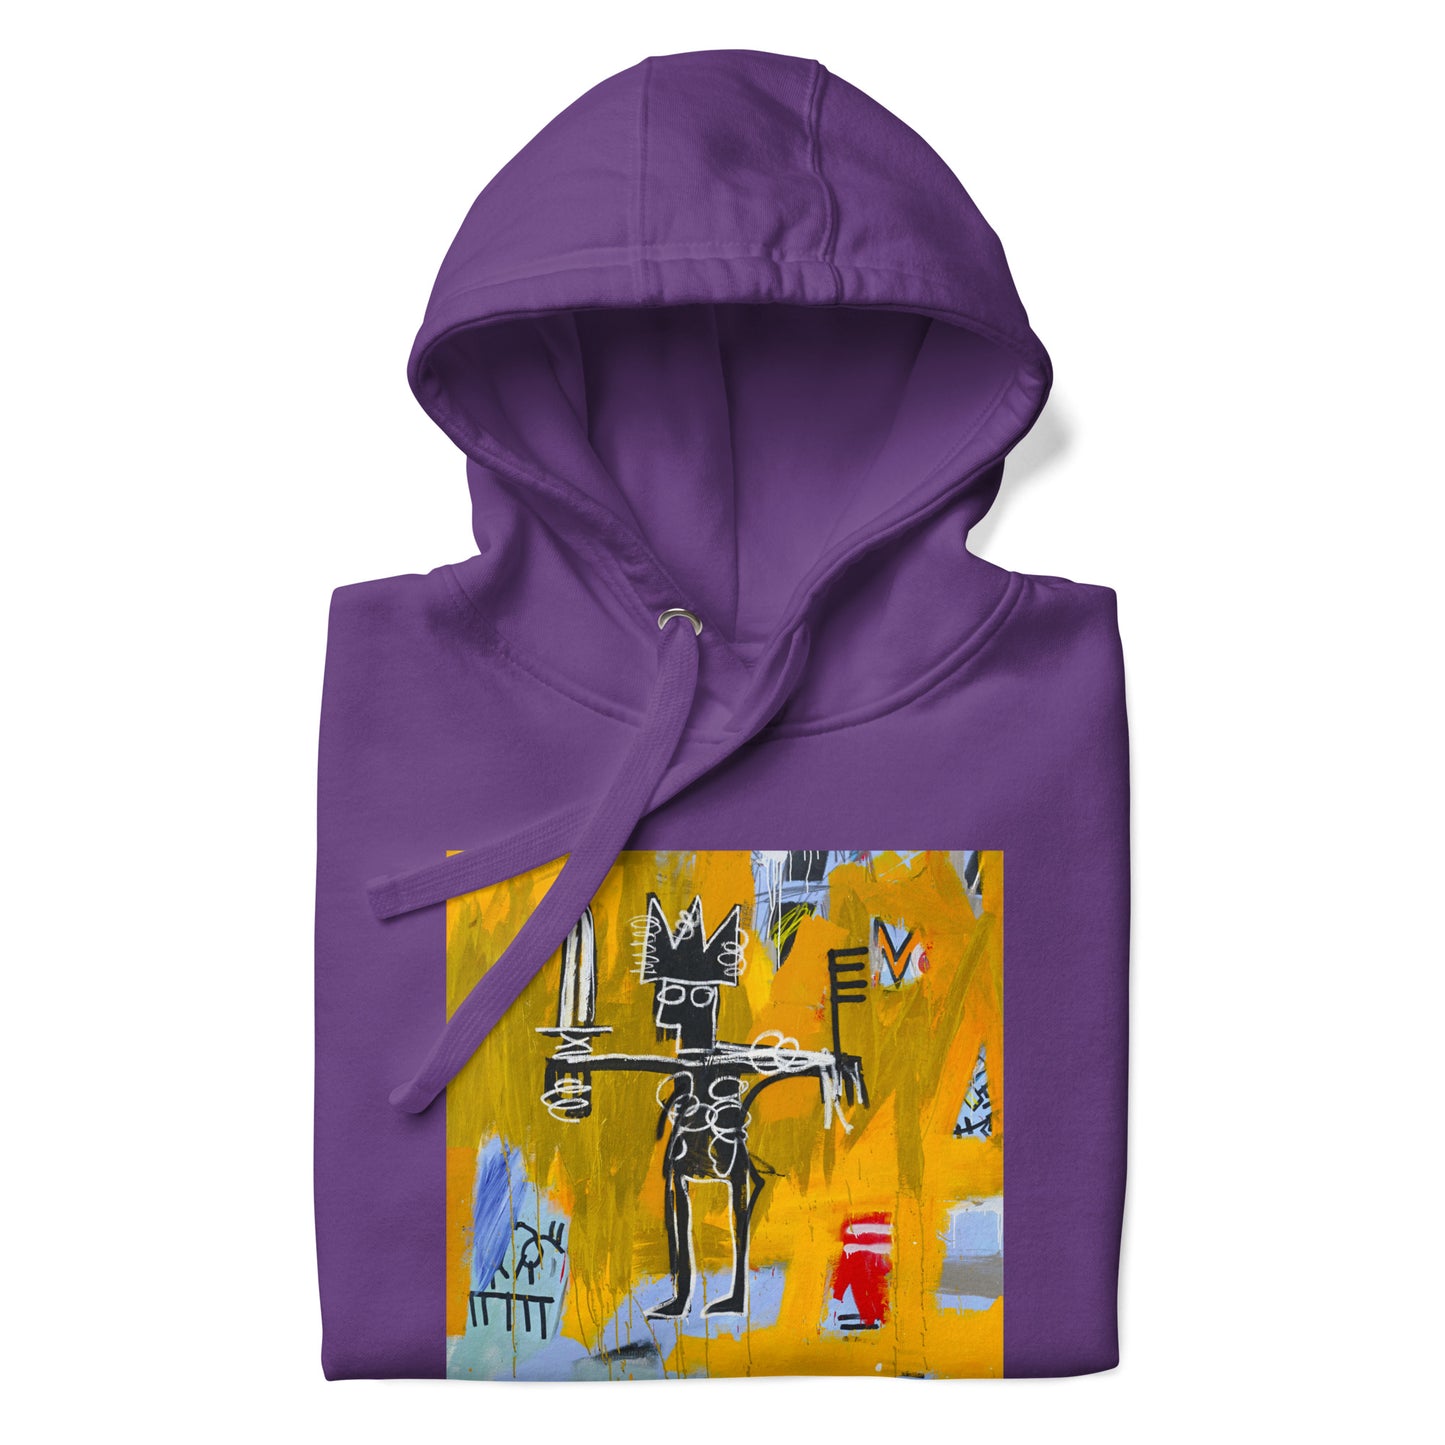 Jean-Michel Basquiat "Julius Caesar on Gold" Artwork Printed Premium Streetwear Sweatshirt Hoodie Purple